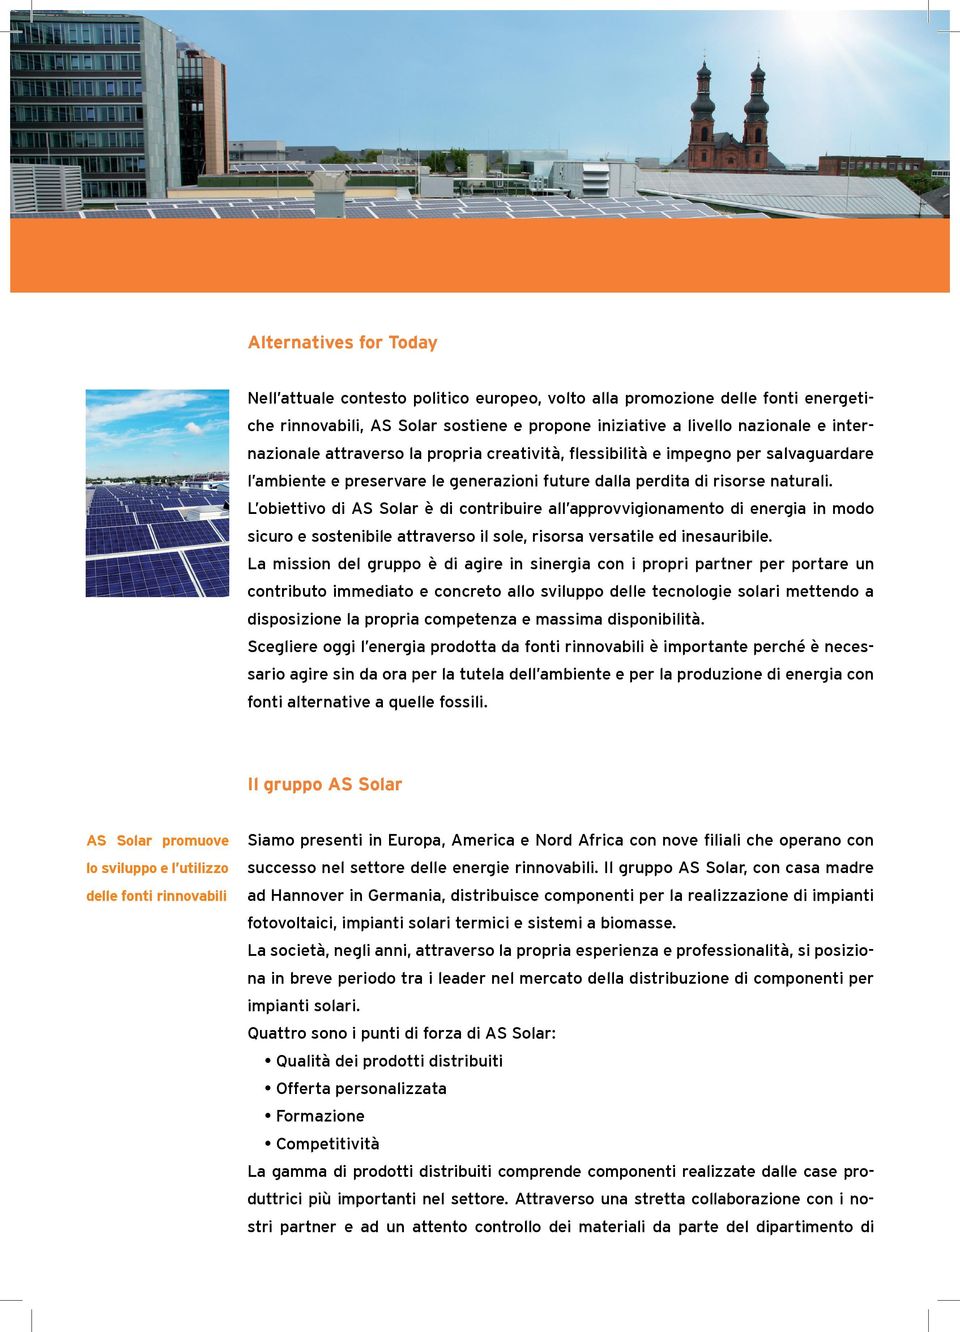 L obiettivo di AS Solar è di contribuire all approvvigionamento di energia in modo sicuro e sostenibile attraverso il sole, risorsa versatile ed inesauribile.